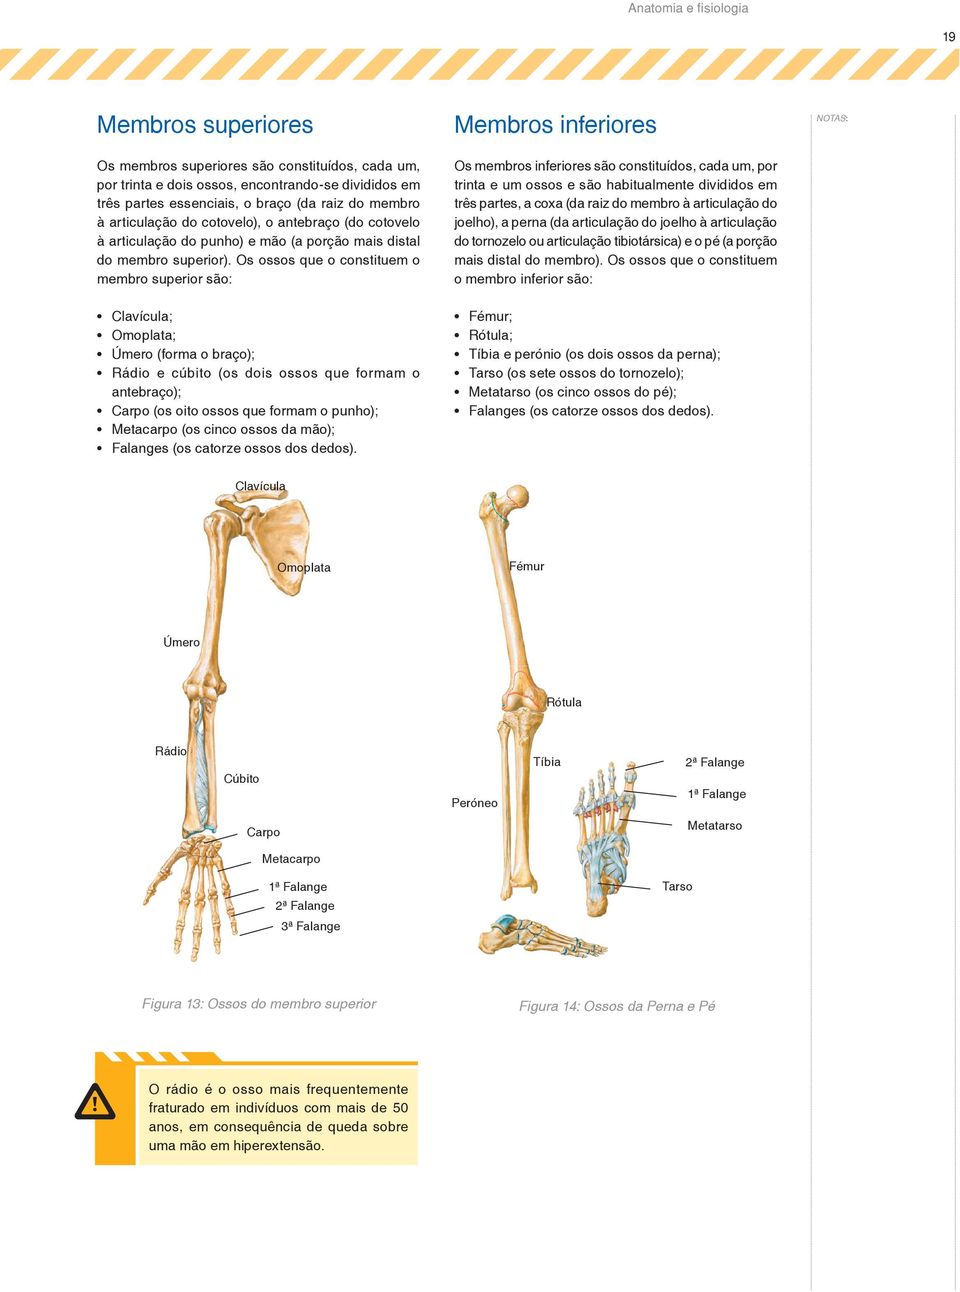 Os ossos que o constituem o membro superior são: Clavícula; Omoplata; Úmero (forma o braço); Rádio e cúbito (os dois ossos que formam o antebraço); Carpo (os oito ossos que formam o punho); Metacarpo